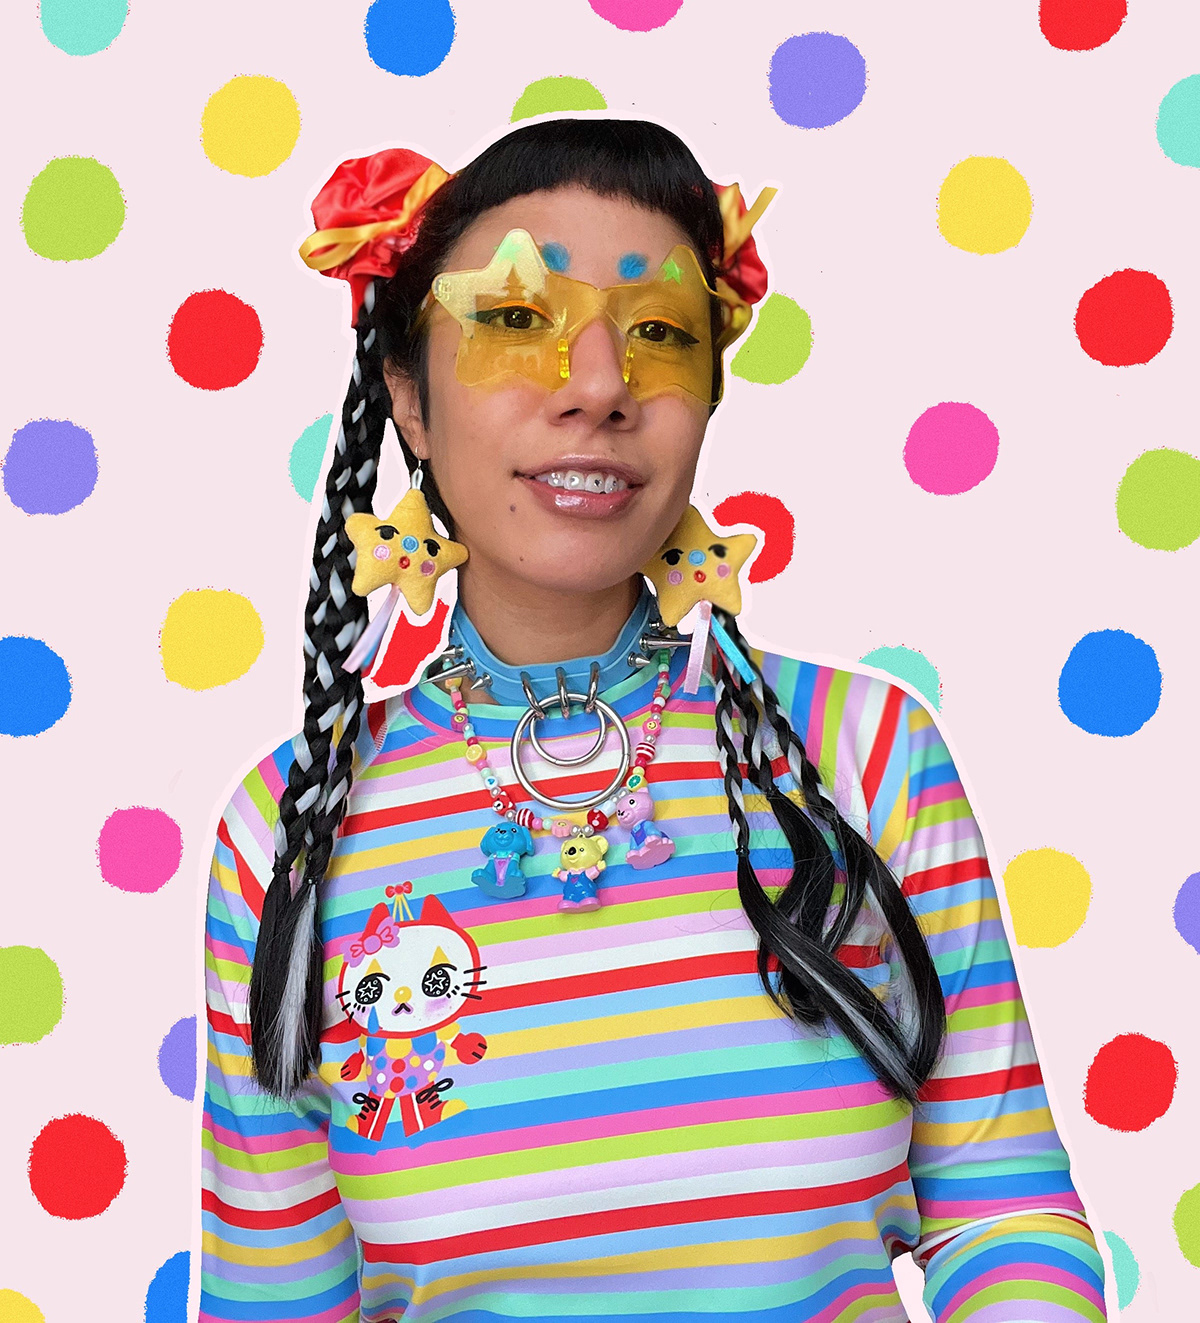 kawaii alt fashion cute CuteCore clowncore queer fashion nonbinary El Salvador